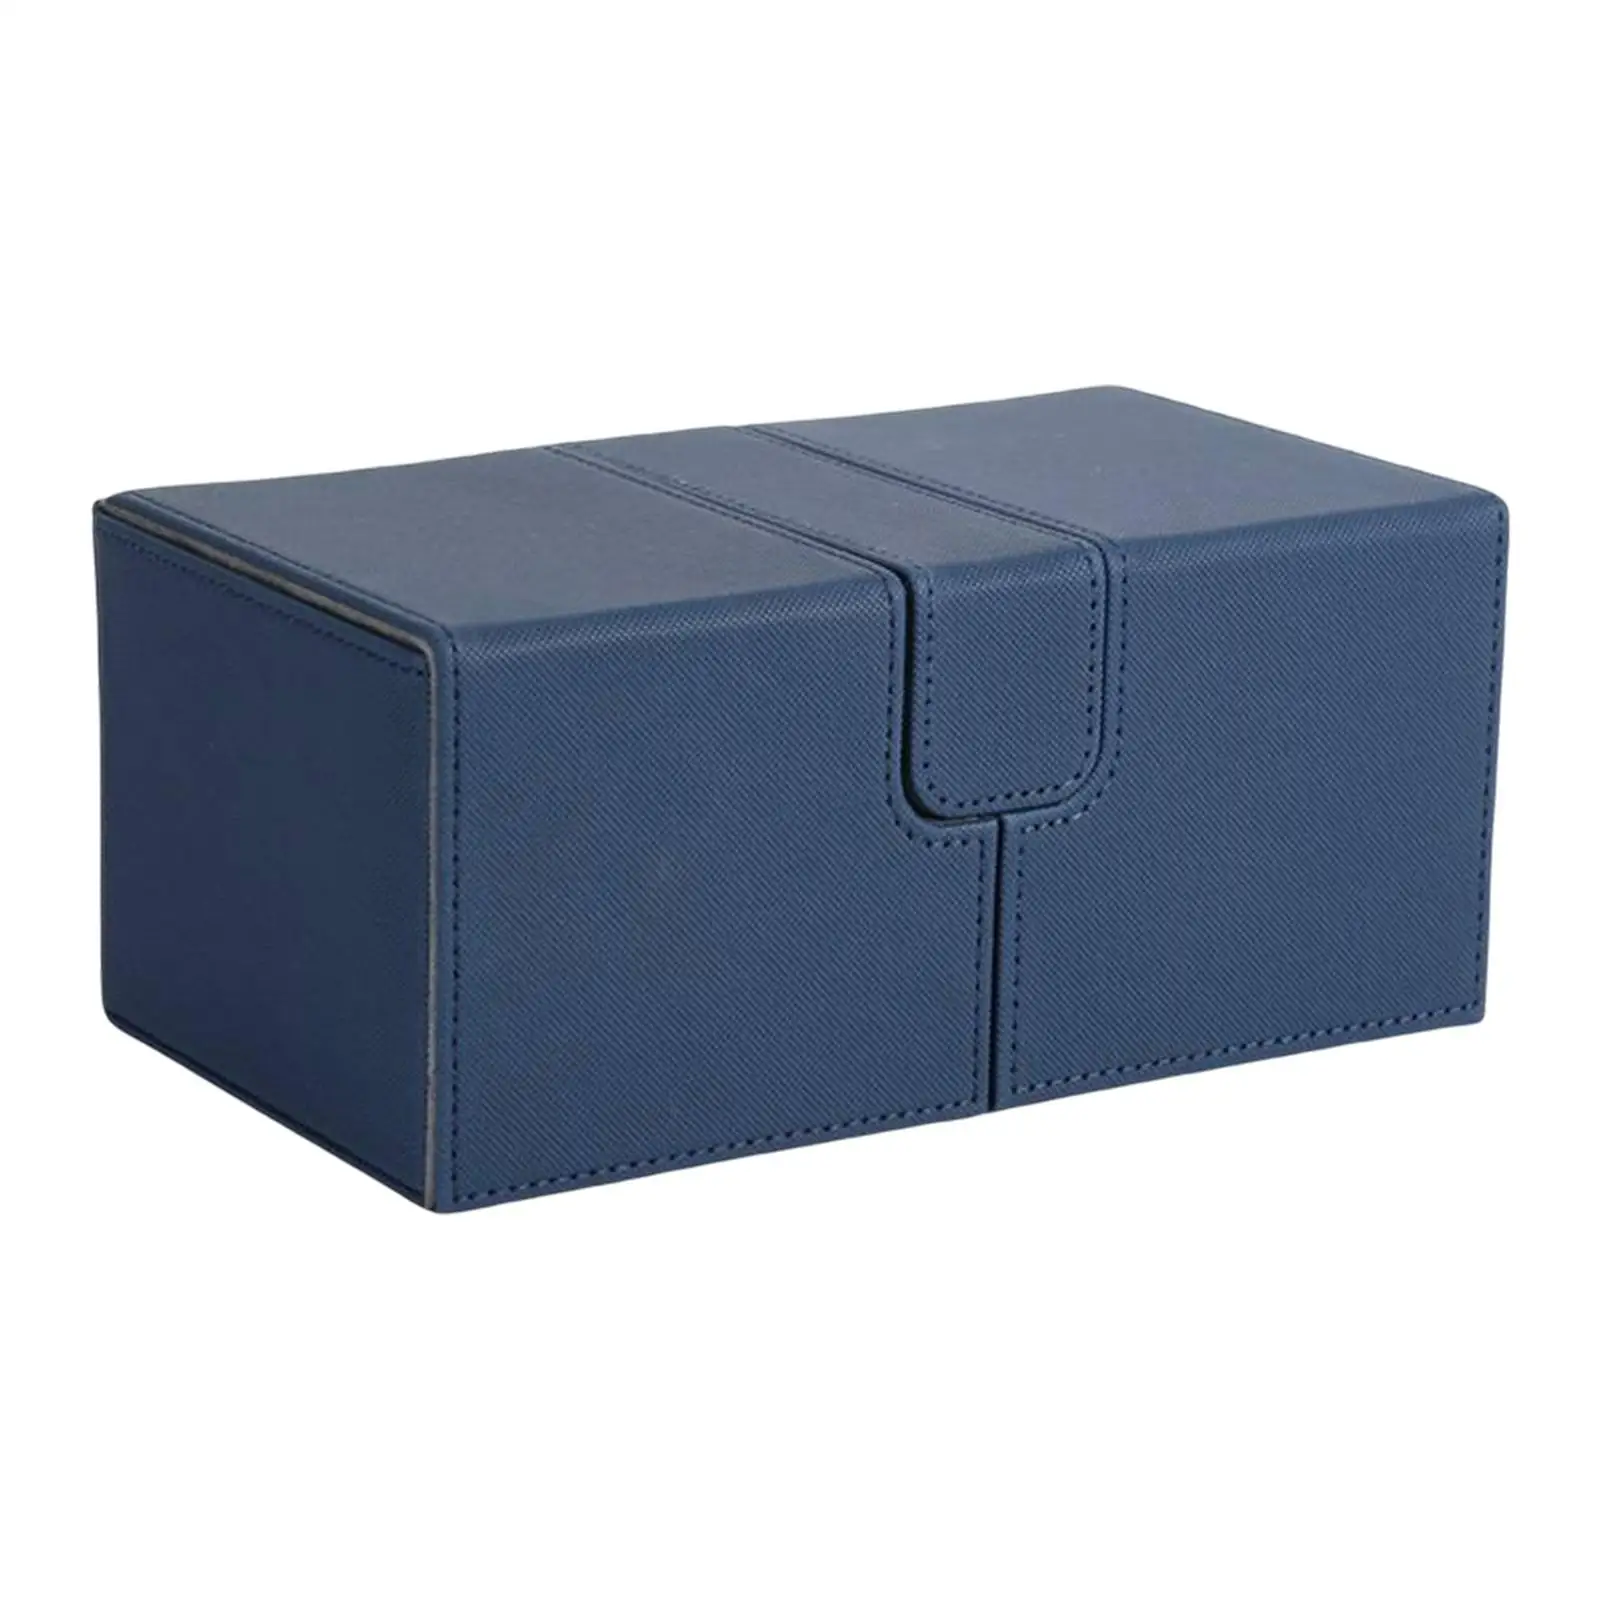 toysmalle Durable Card Deck Box Holder Organizer Storage Closure